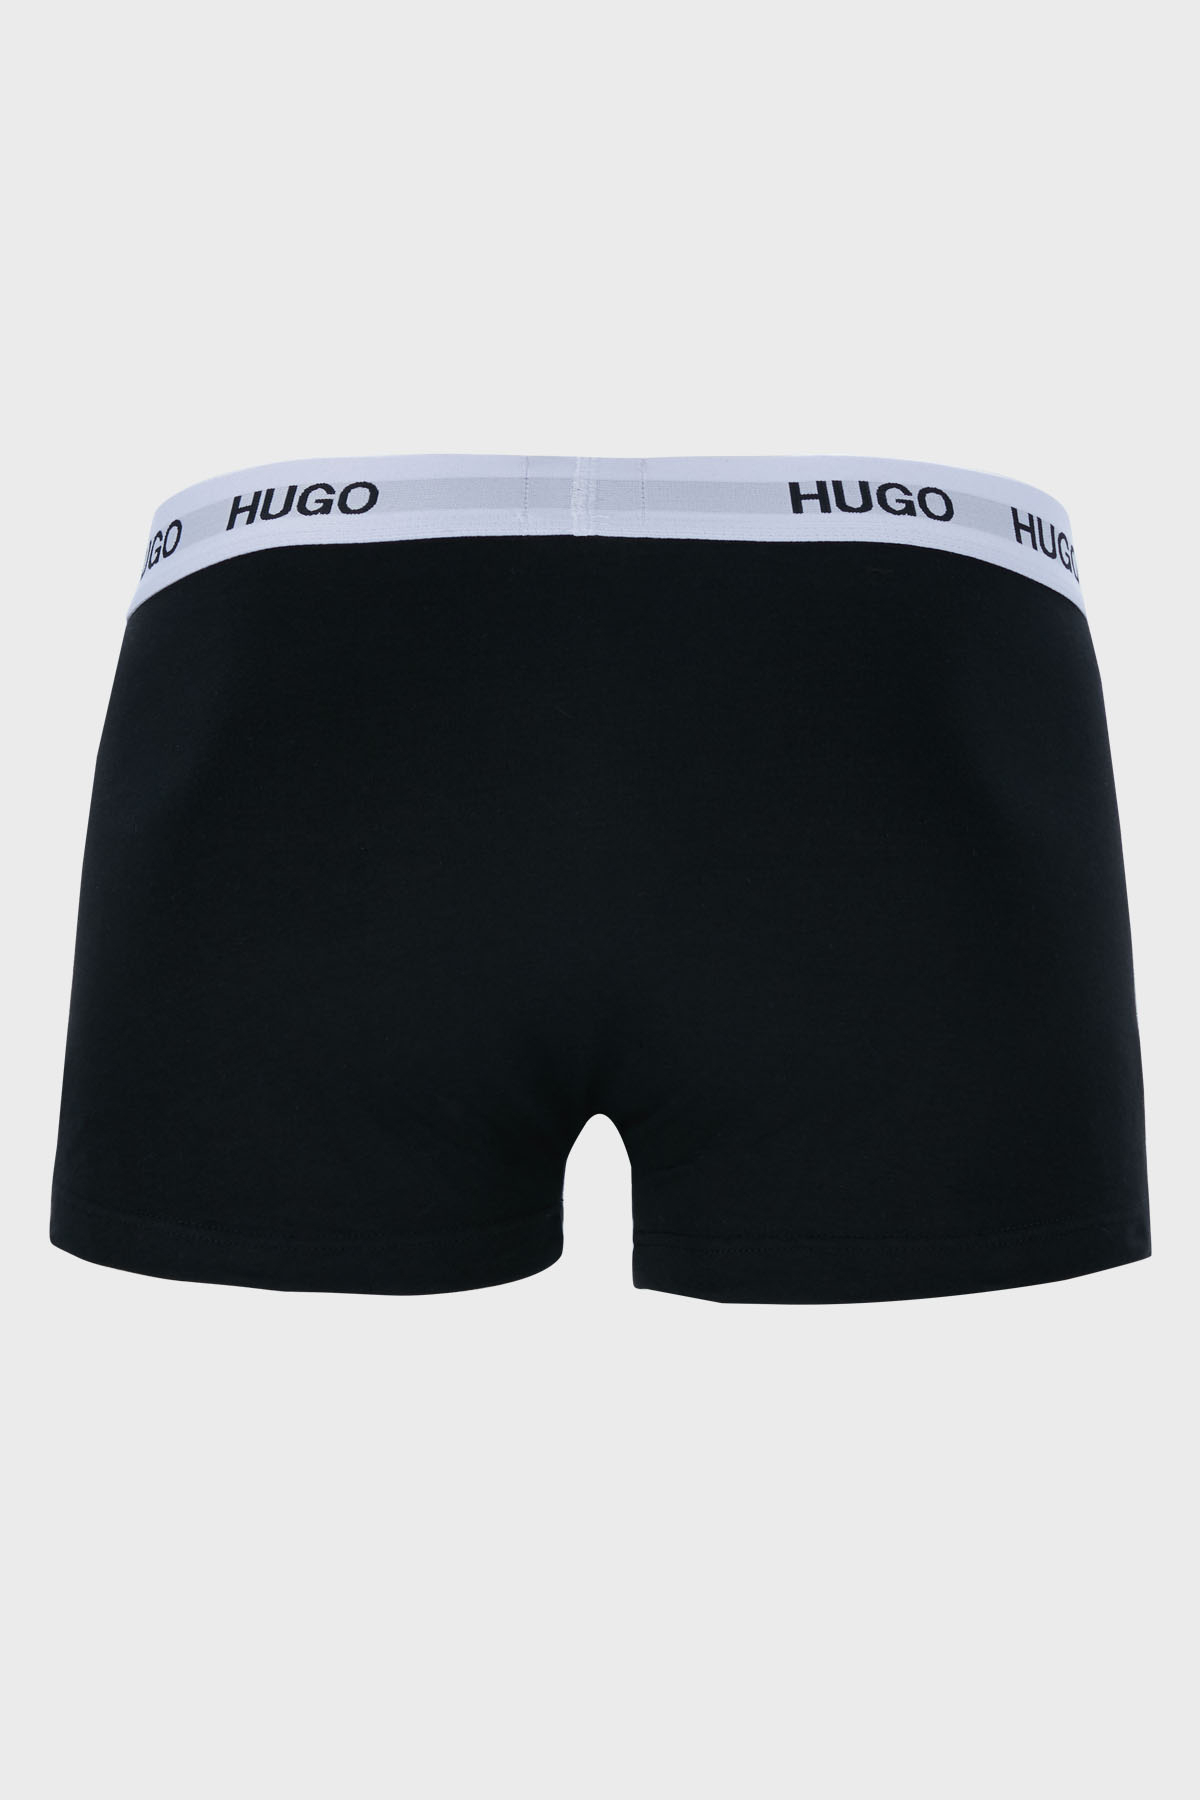 Hugo Pamuklu 3 Pack Erkek Boxer 50449351 975 SİYAH